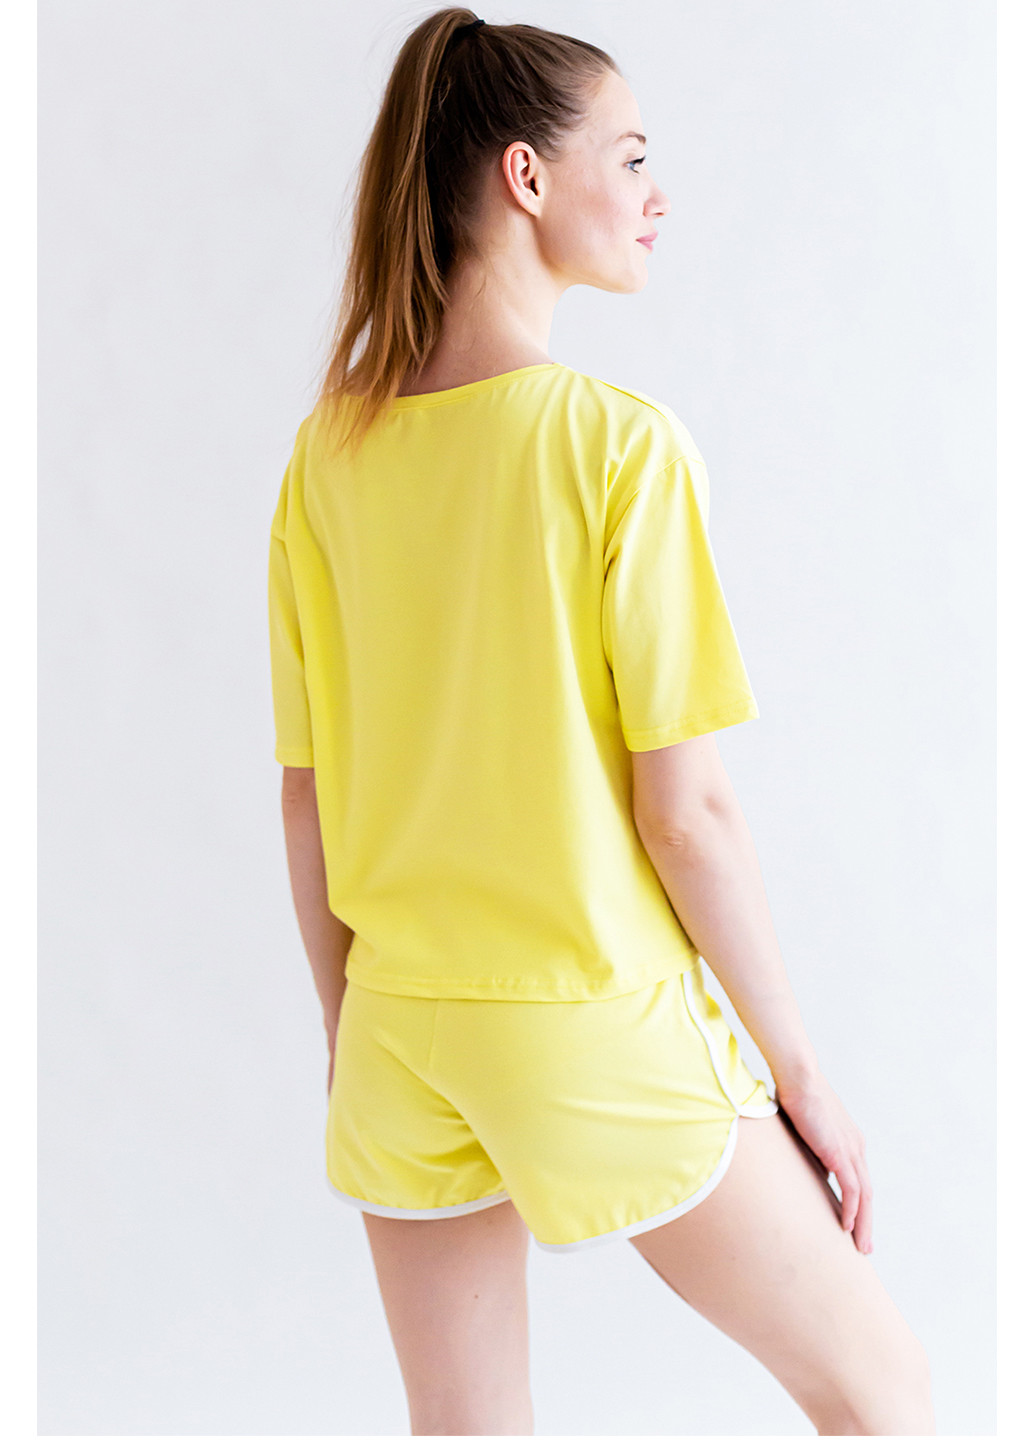 Жовта всесезон комплект жіночий (футболка та шорти) футболка + шорти Kosta 2173-8